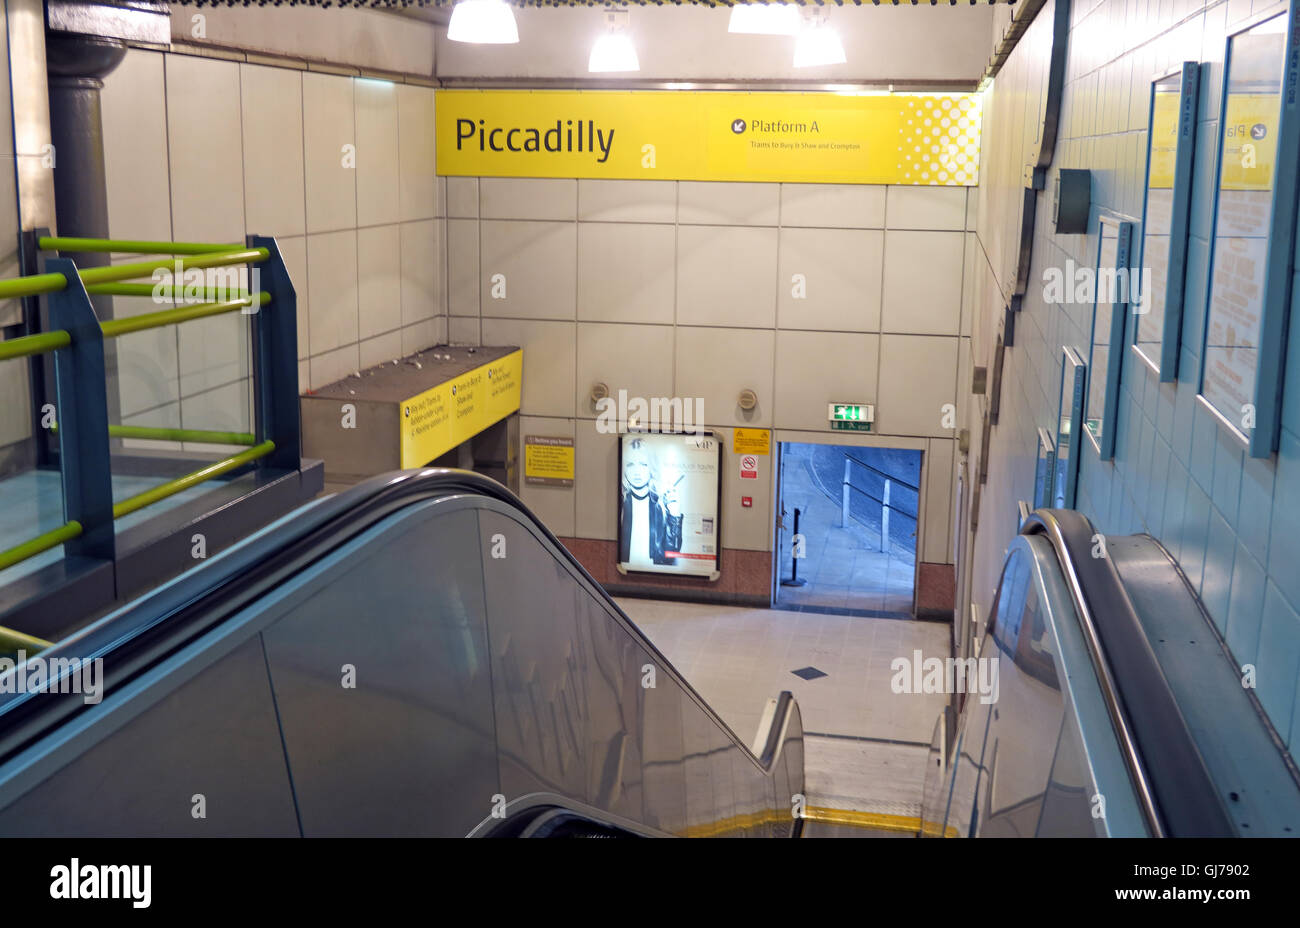 La station de métro de Piccadilly, Manchester, North West England, UK M1 2QF Banque D'Images